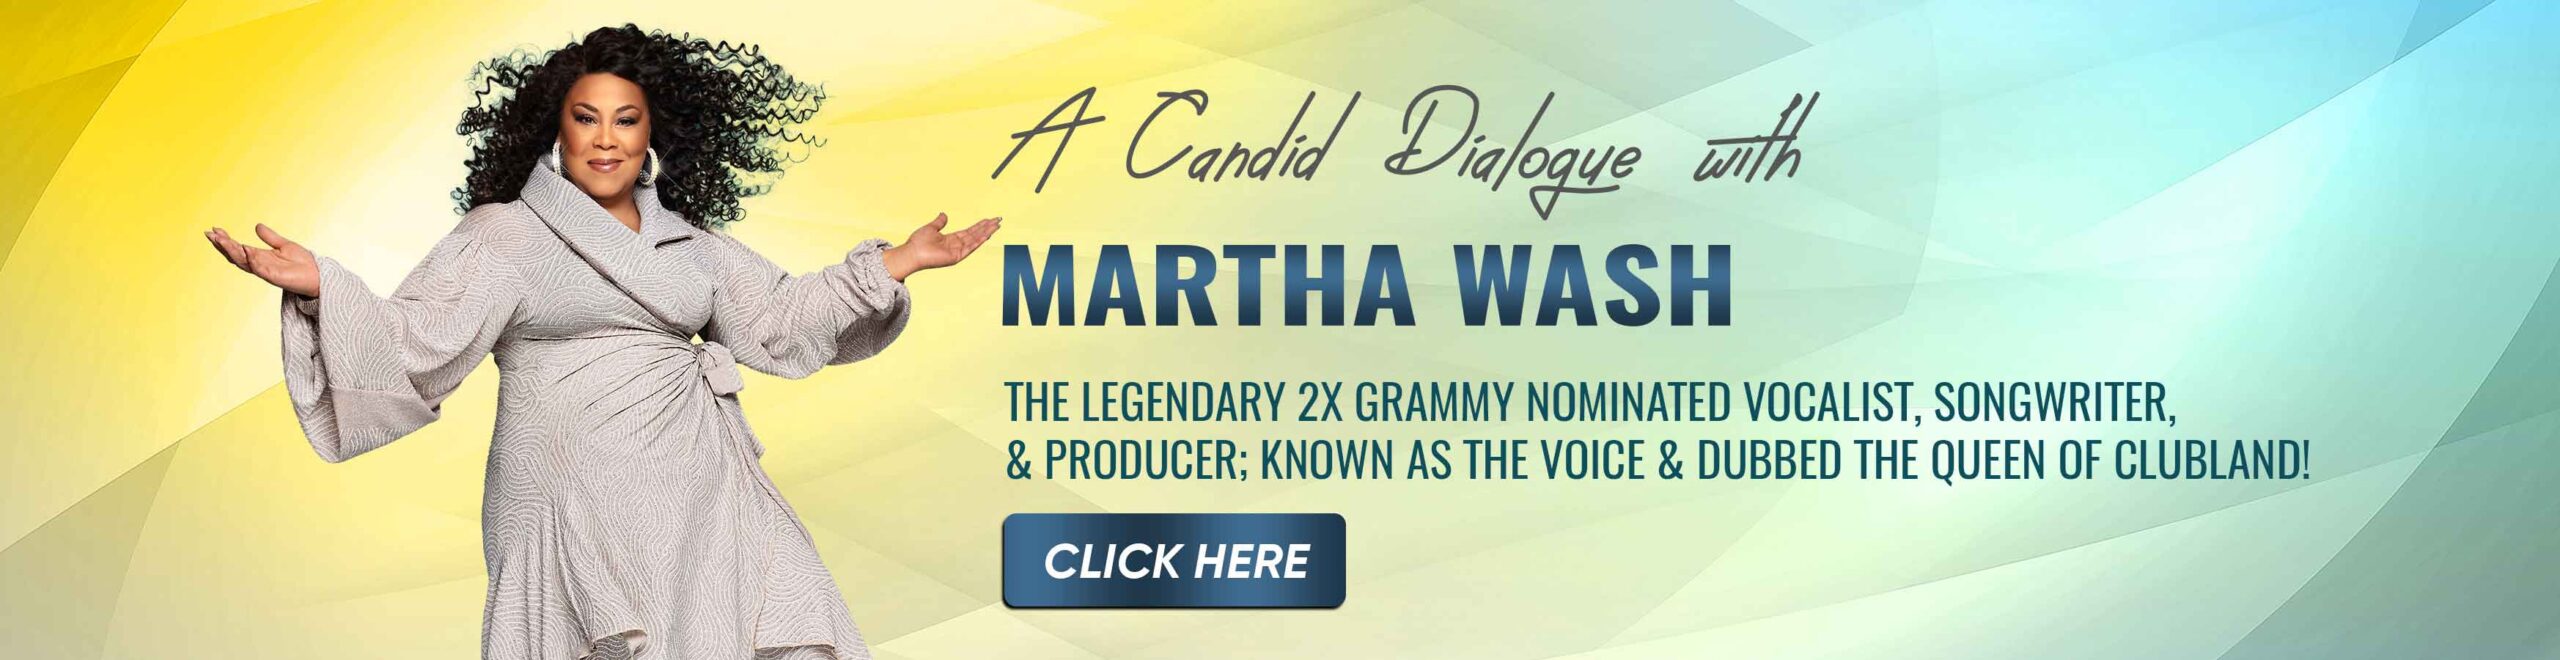 Martha-Wash-Carousel